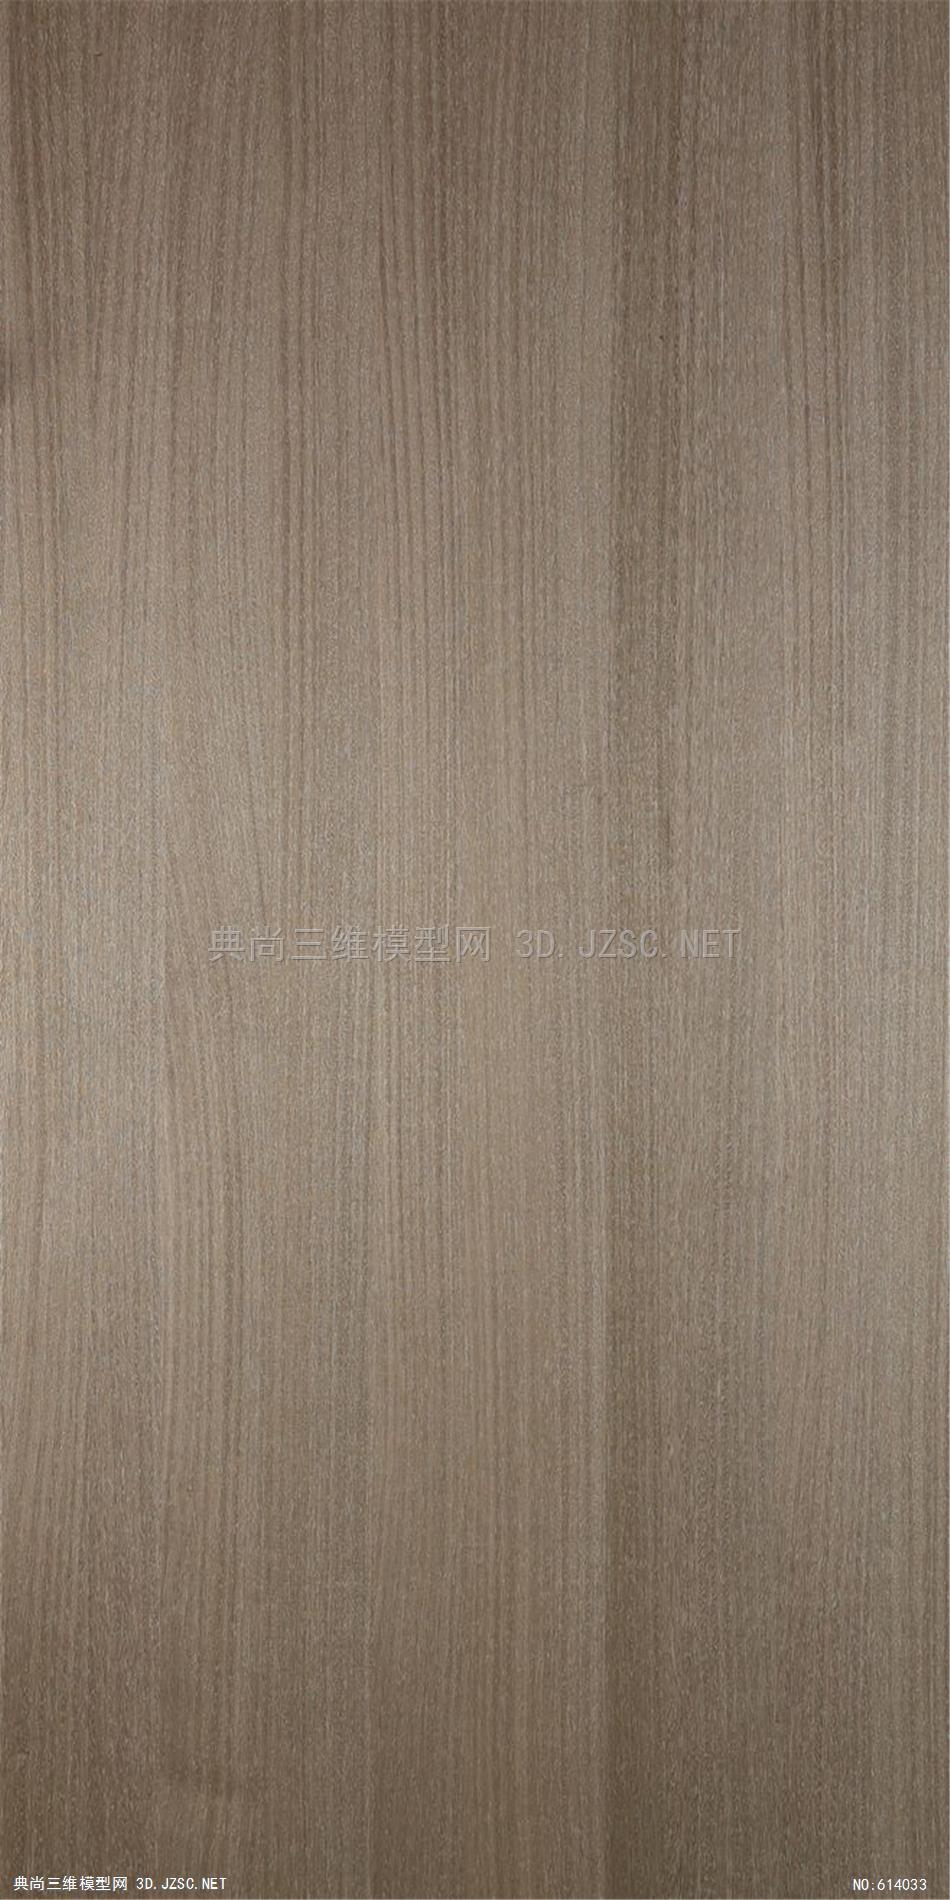 木饰面木纹木材高清材质贴图221材质贴图